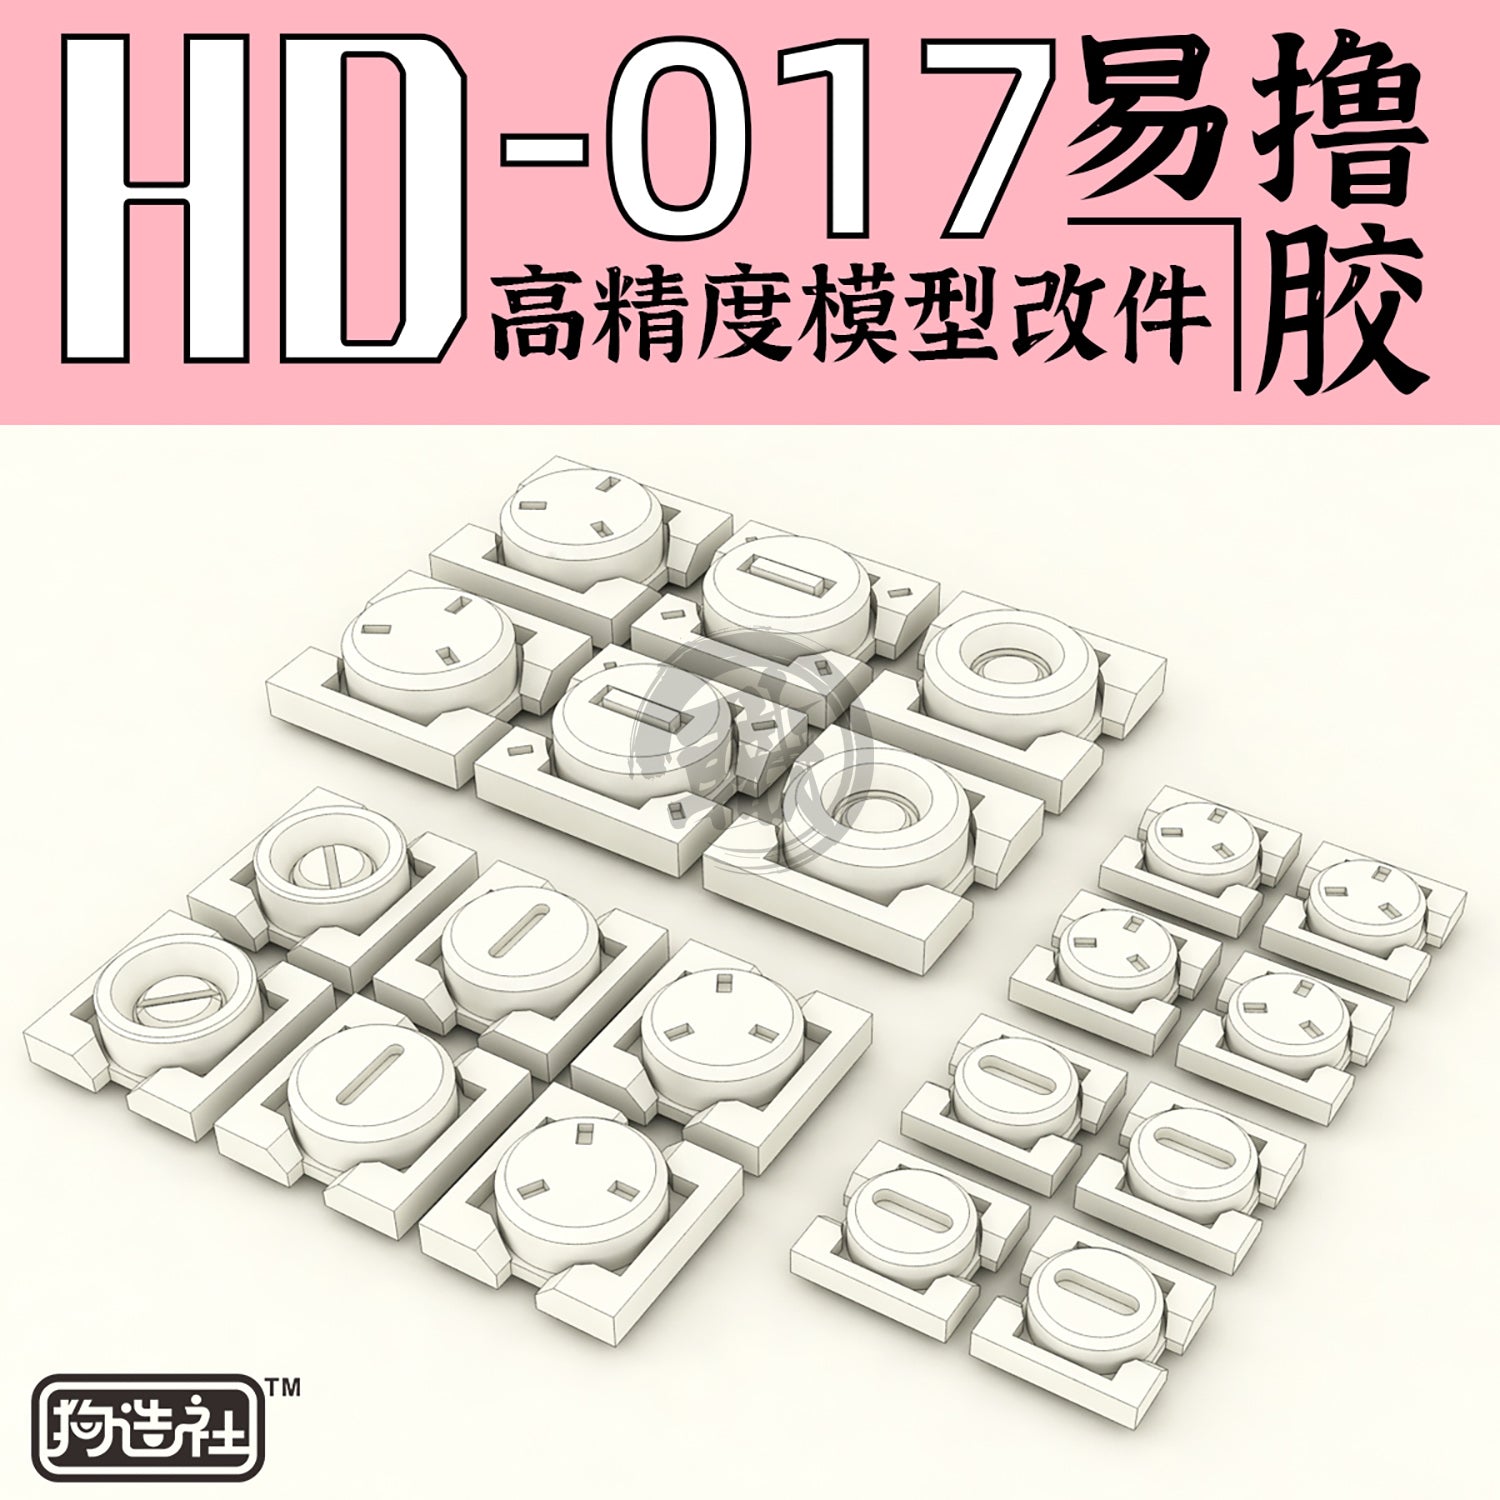 GZ-HD-017 - ShokuninGunpla